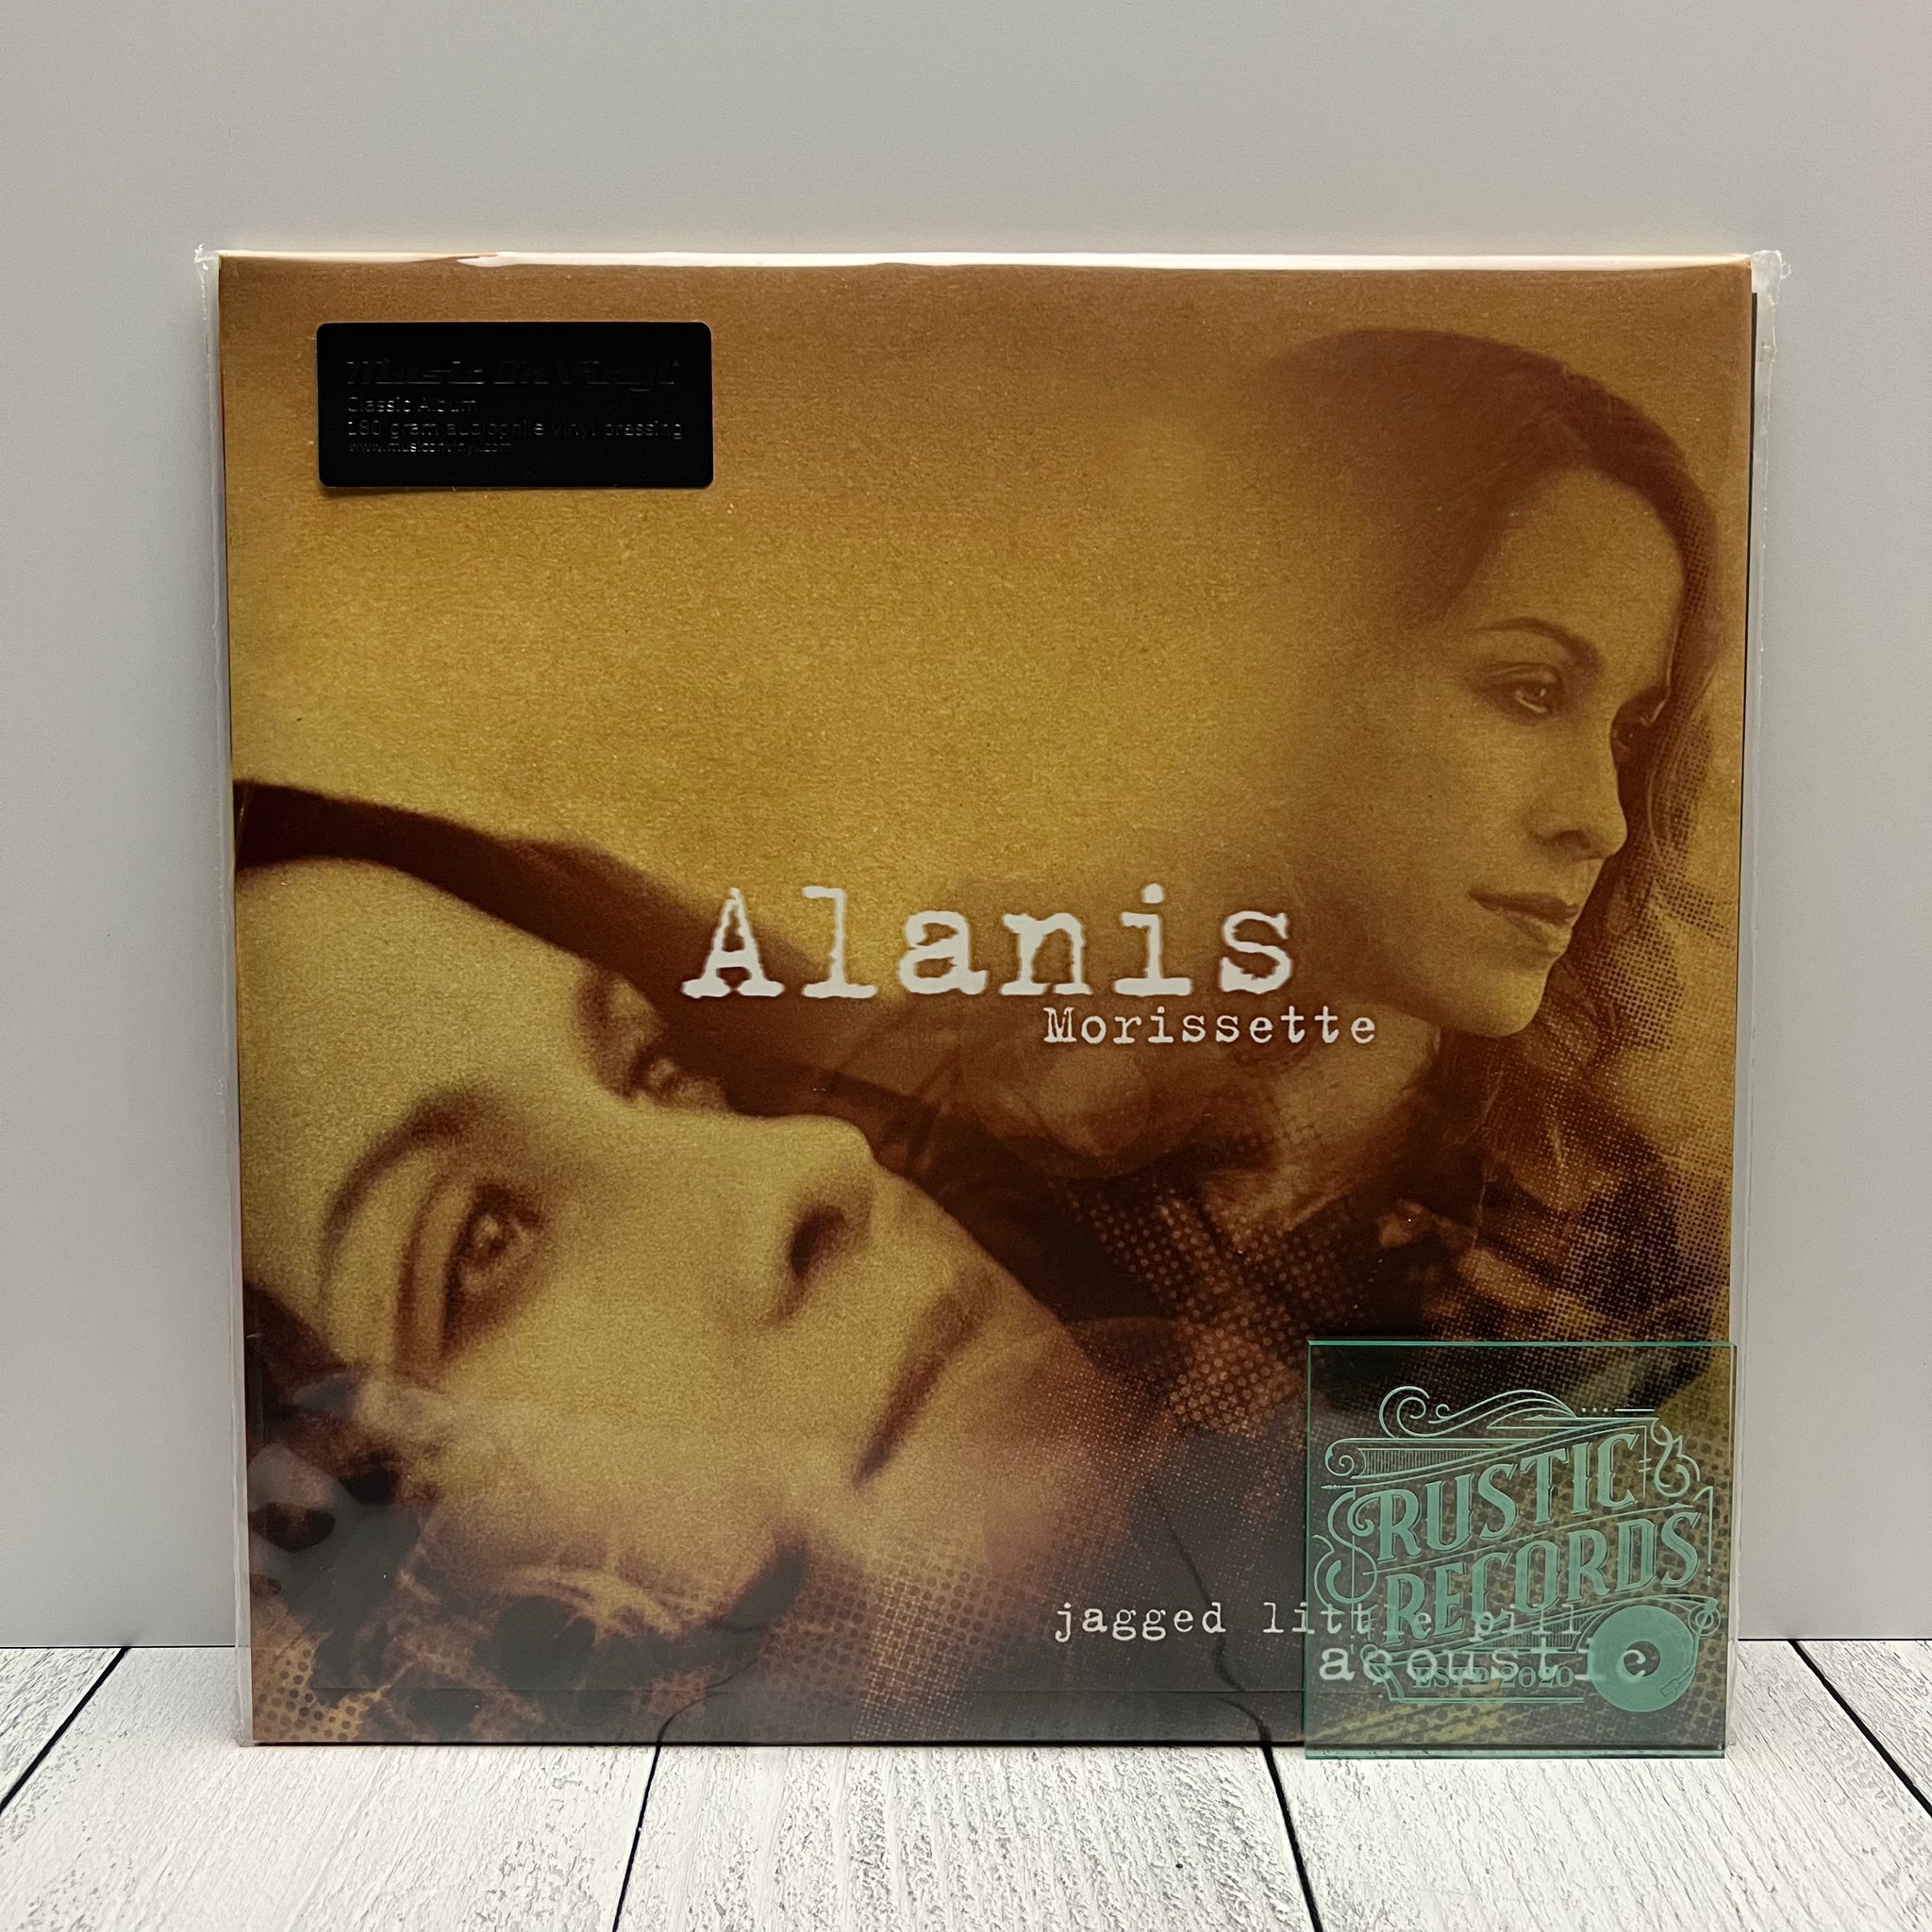 Alanis Morissette - Jagged Little Pill Acoustic (Music On Vinyl)